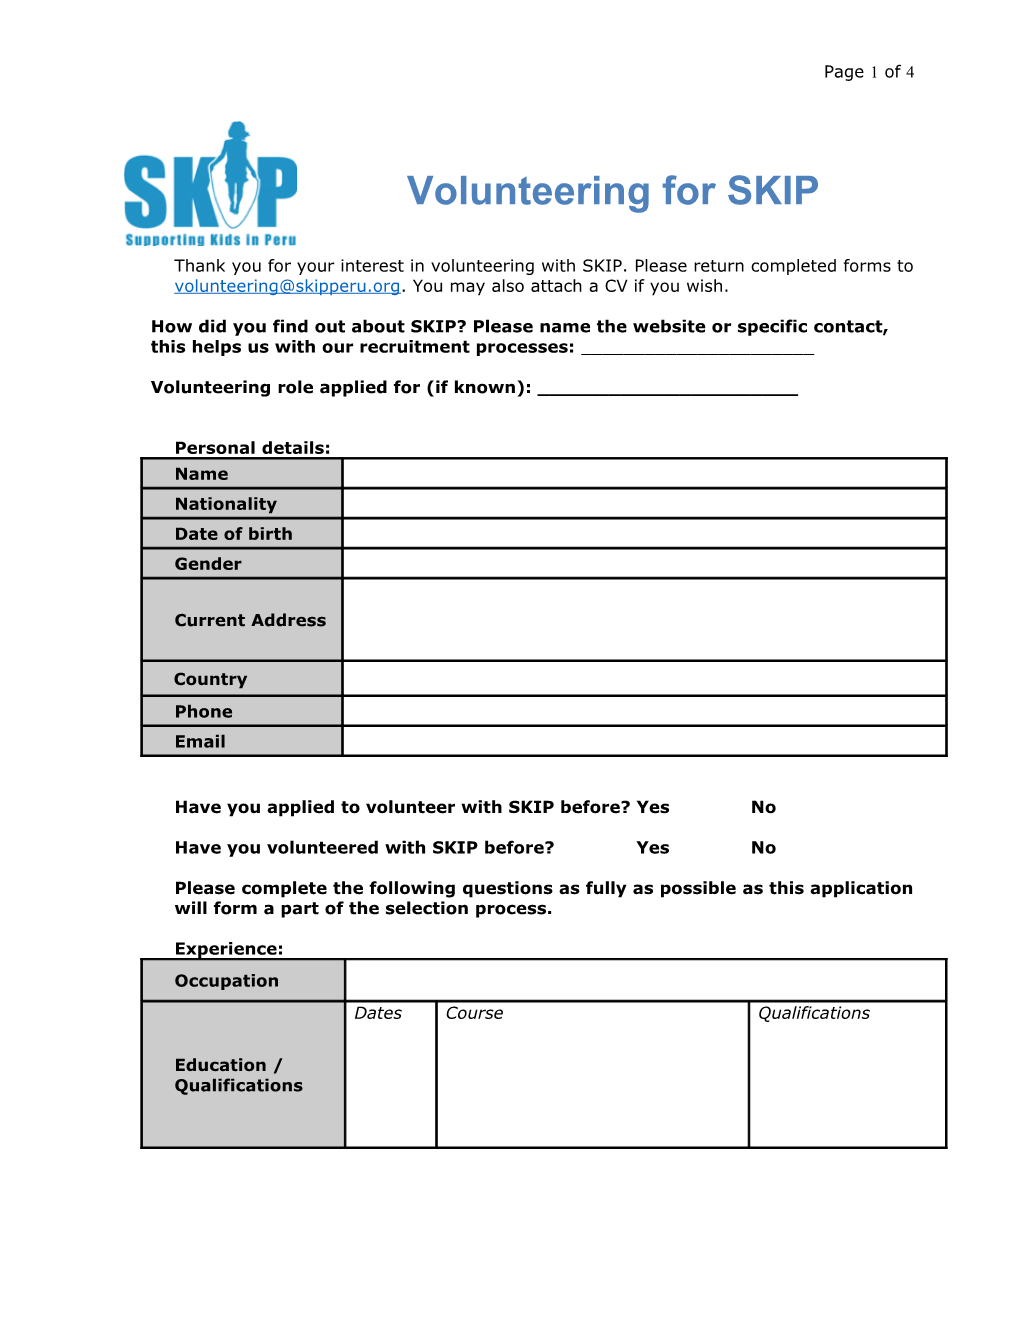 Volunteering for SKIP